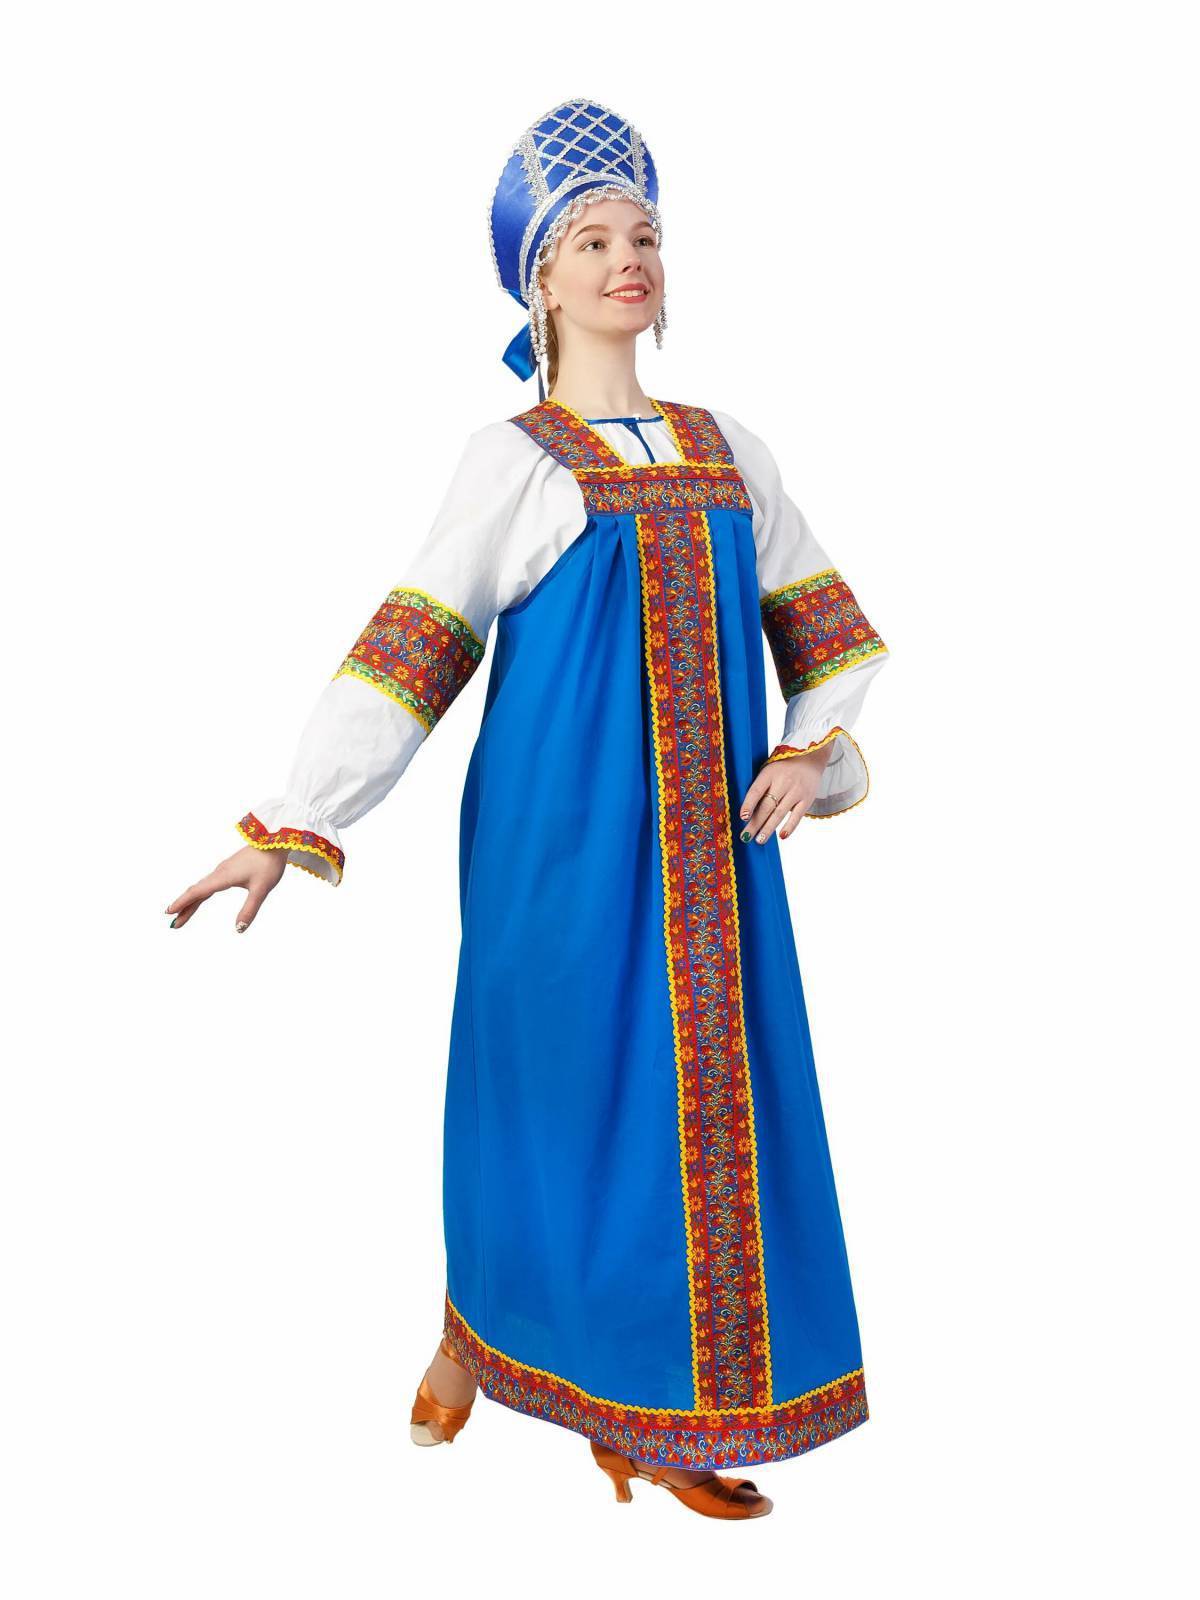 Русский народный костюм